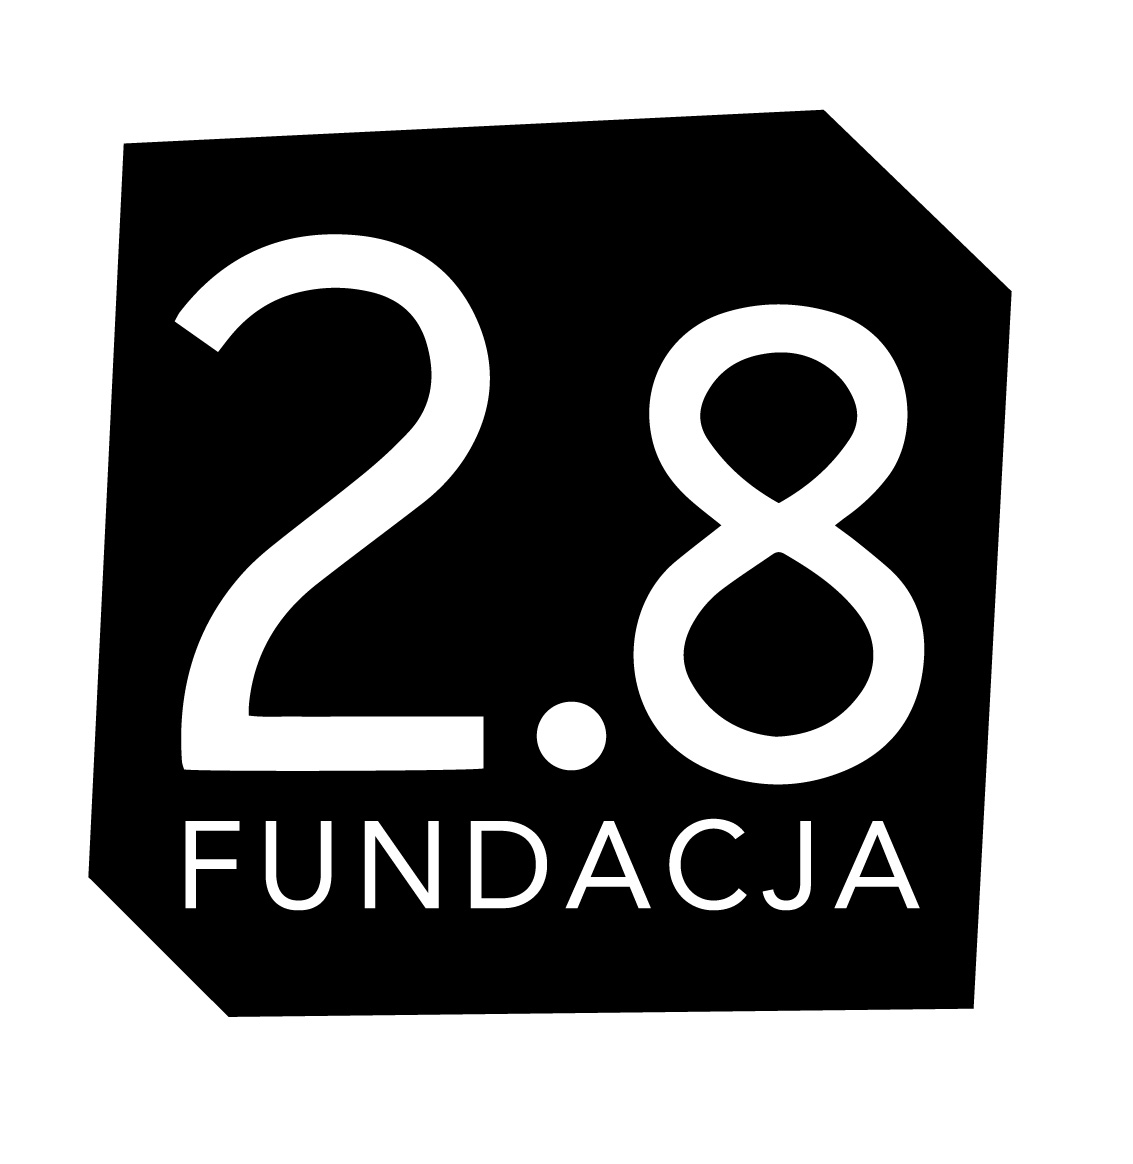 Fundacja 2.8 | Kolektyw fotografów w Opolu. Projekty fotograficzne: Festiwal Fotografii, wystawy, spotkania.